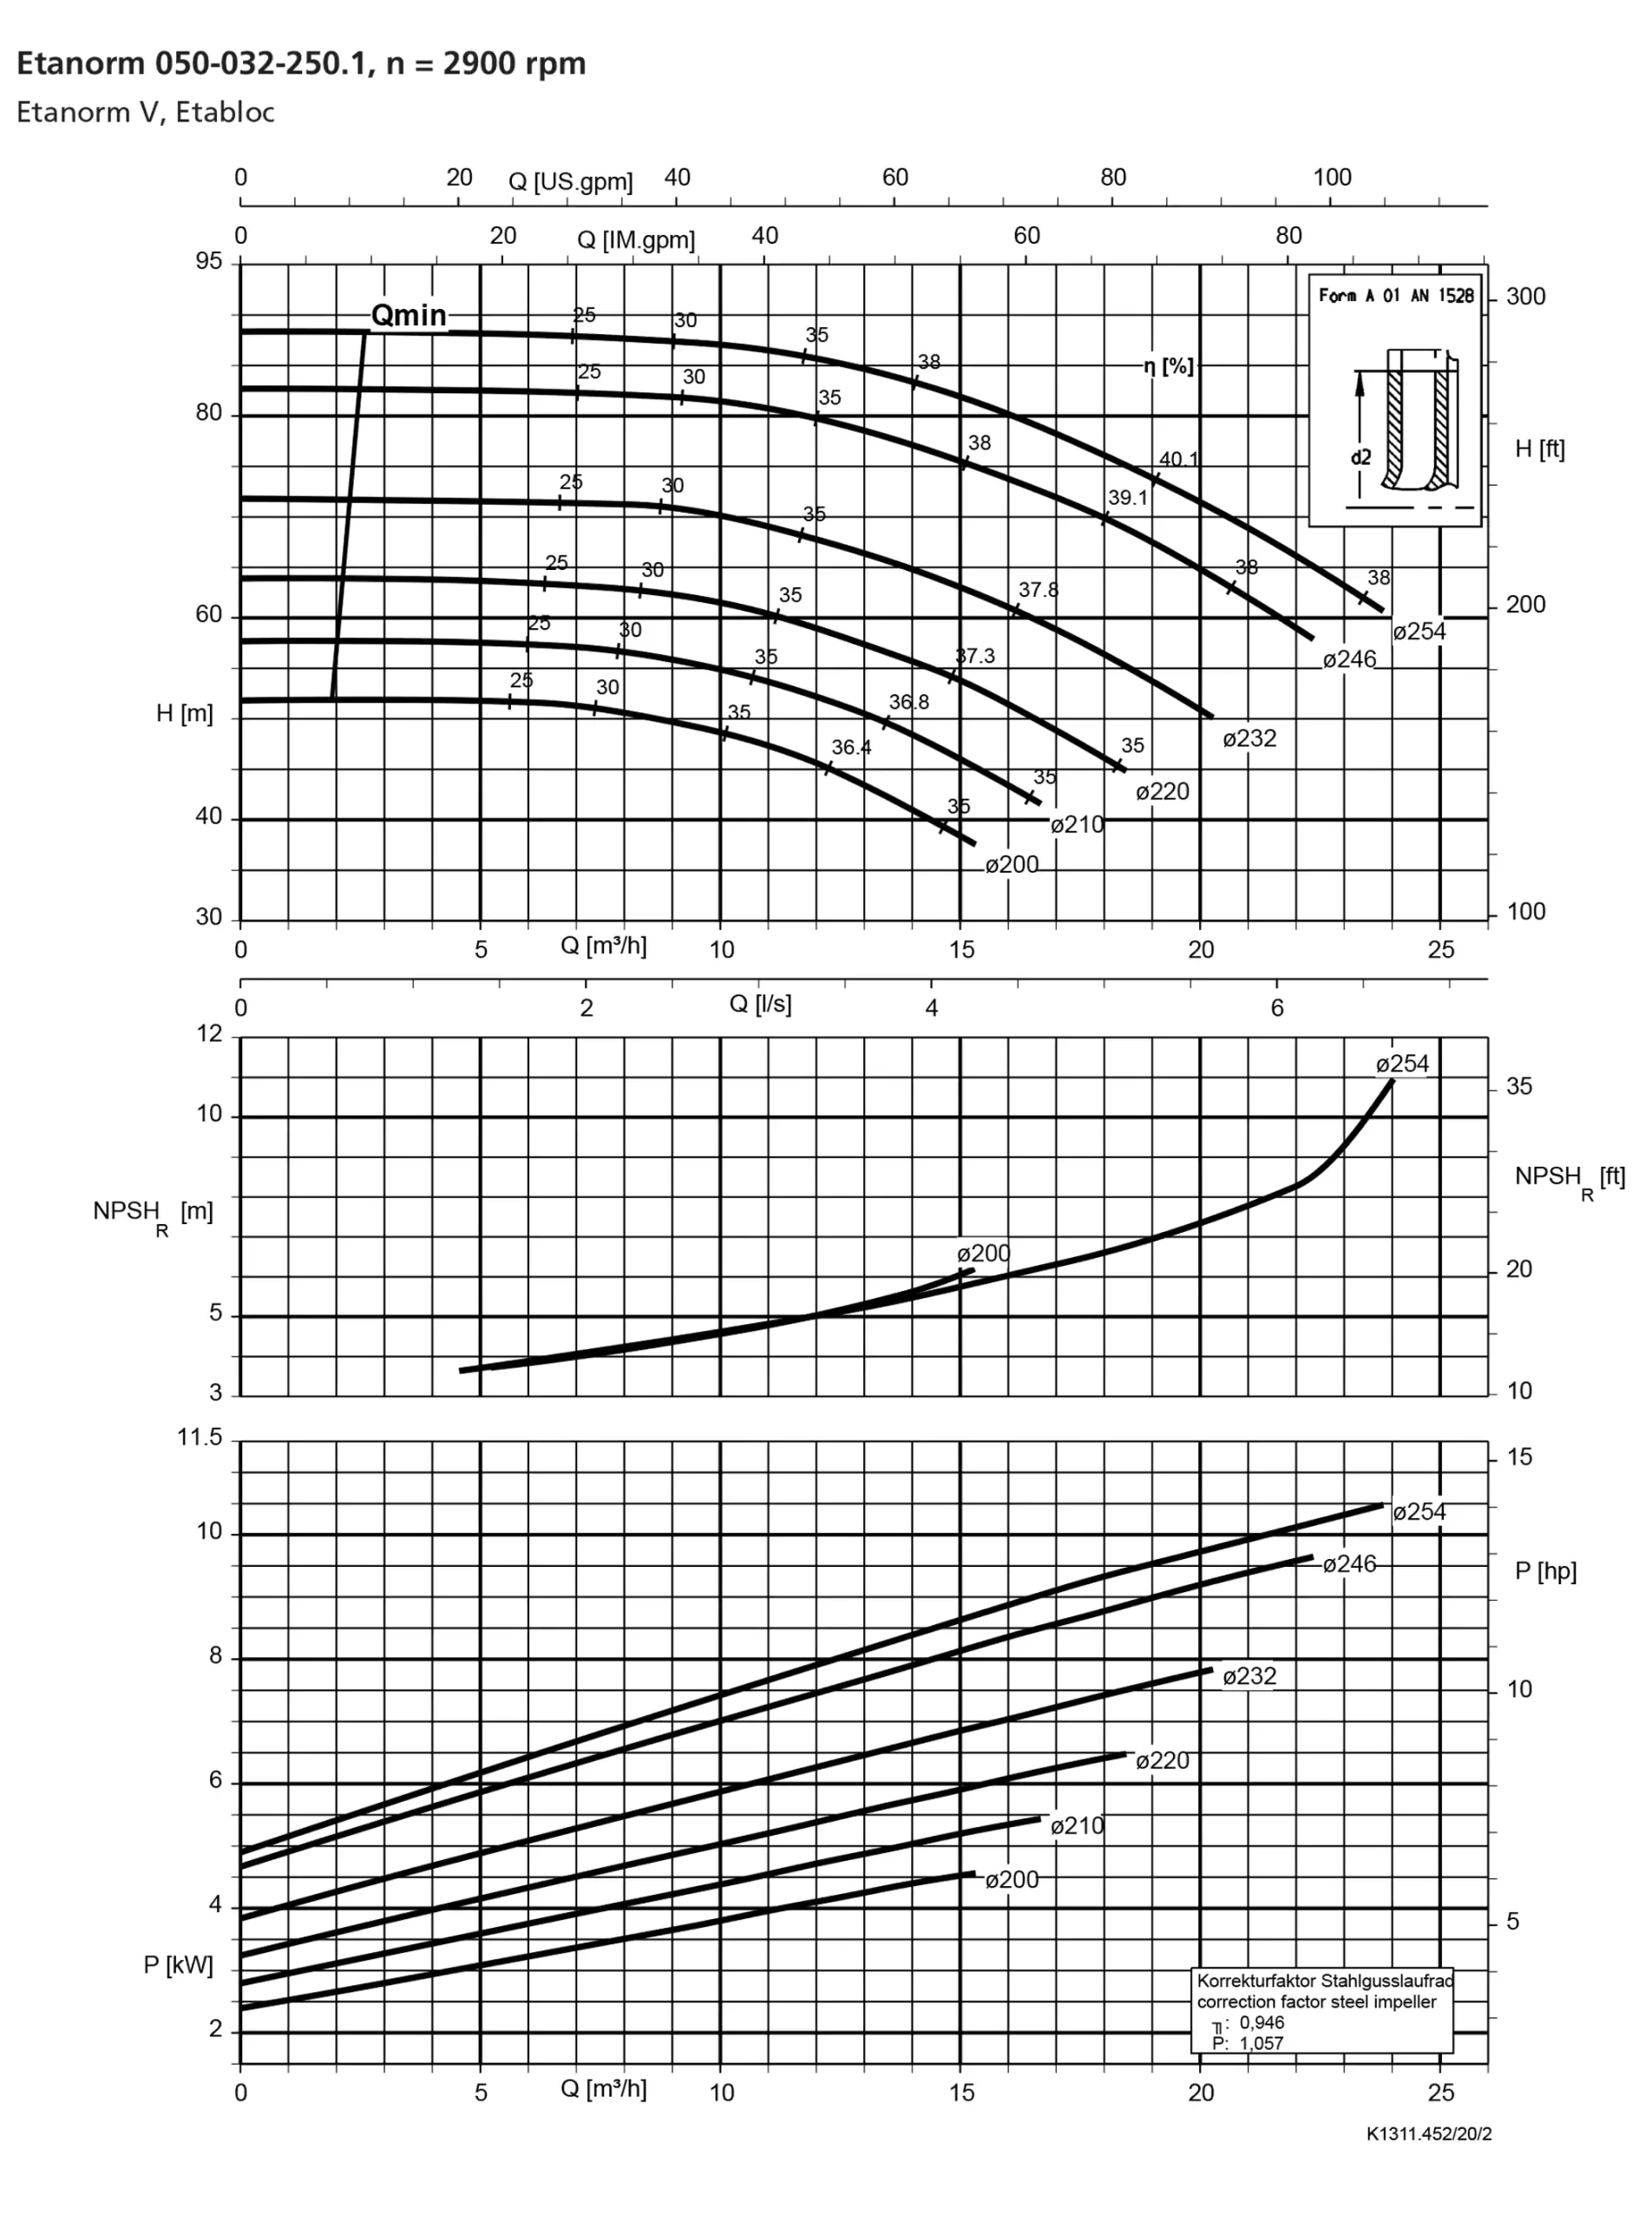 نمودار-کارکرد-پمپ-etanorm-syt-50-32-250-1-2900